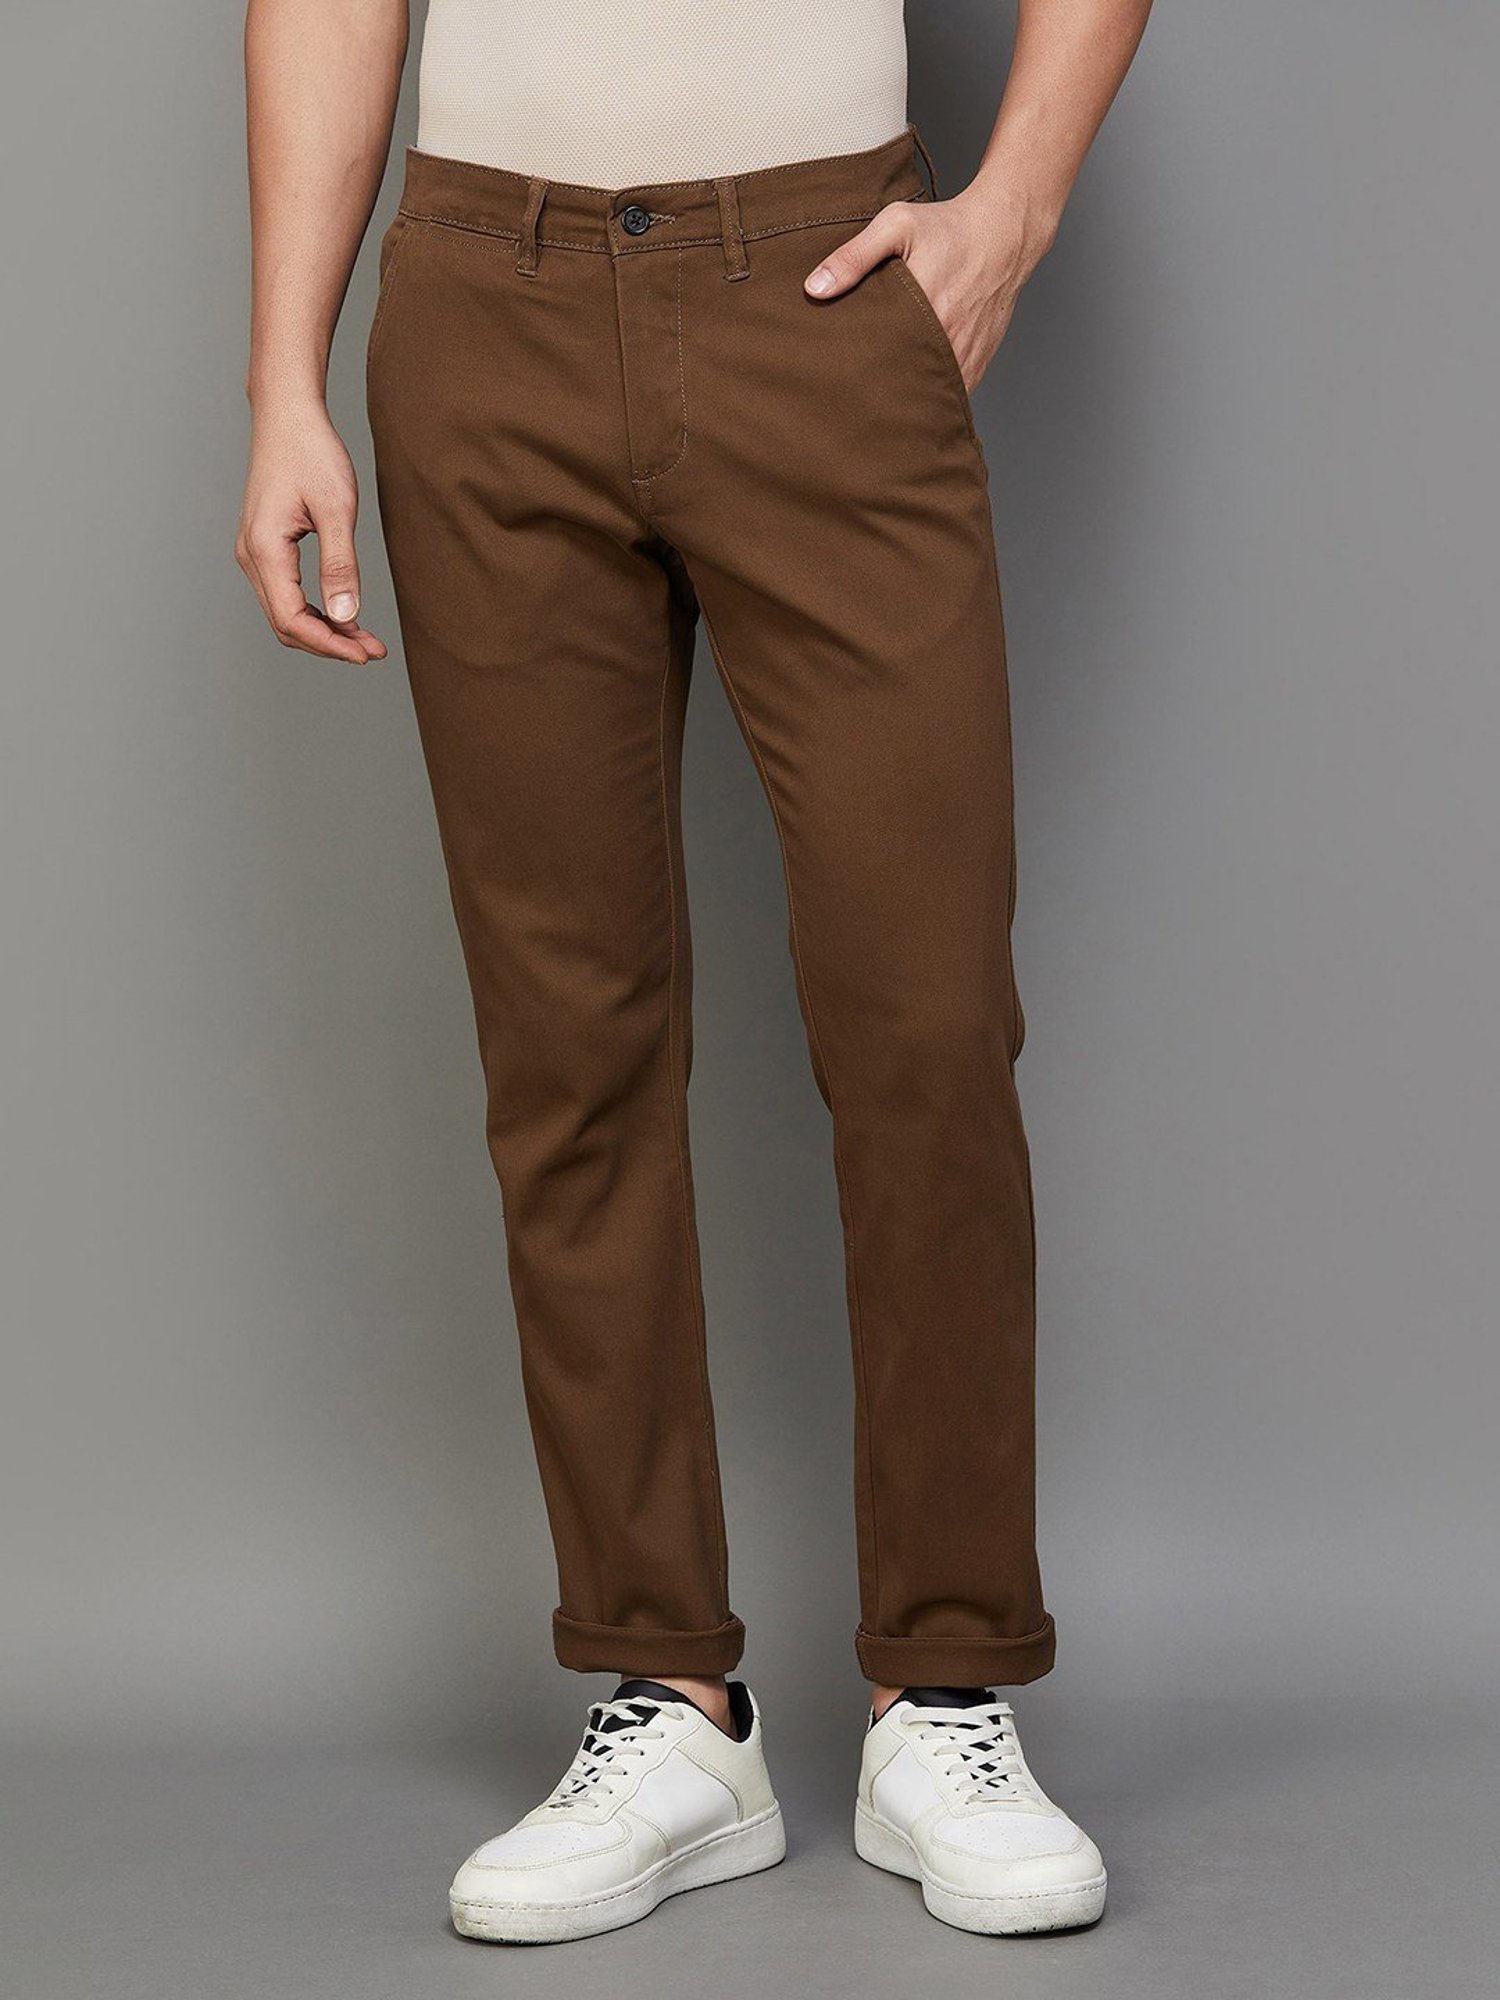 Buy Linen Easy Pants for Men Tree Trunk Brown Online